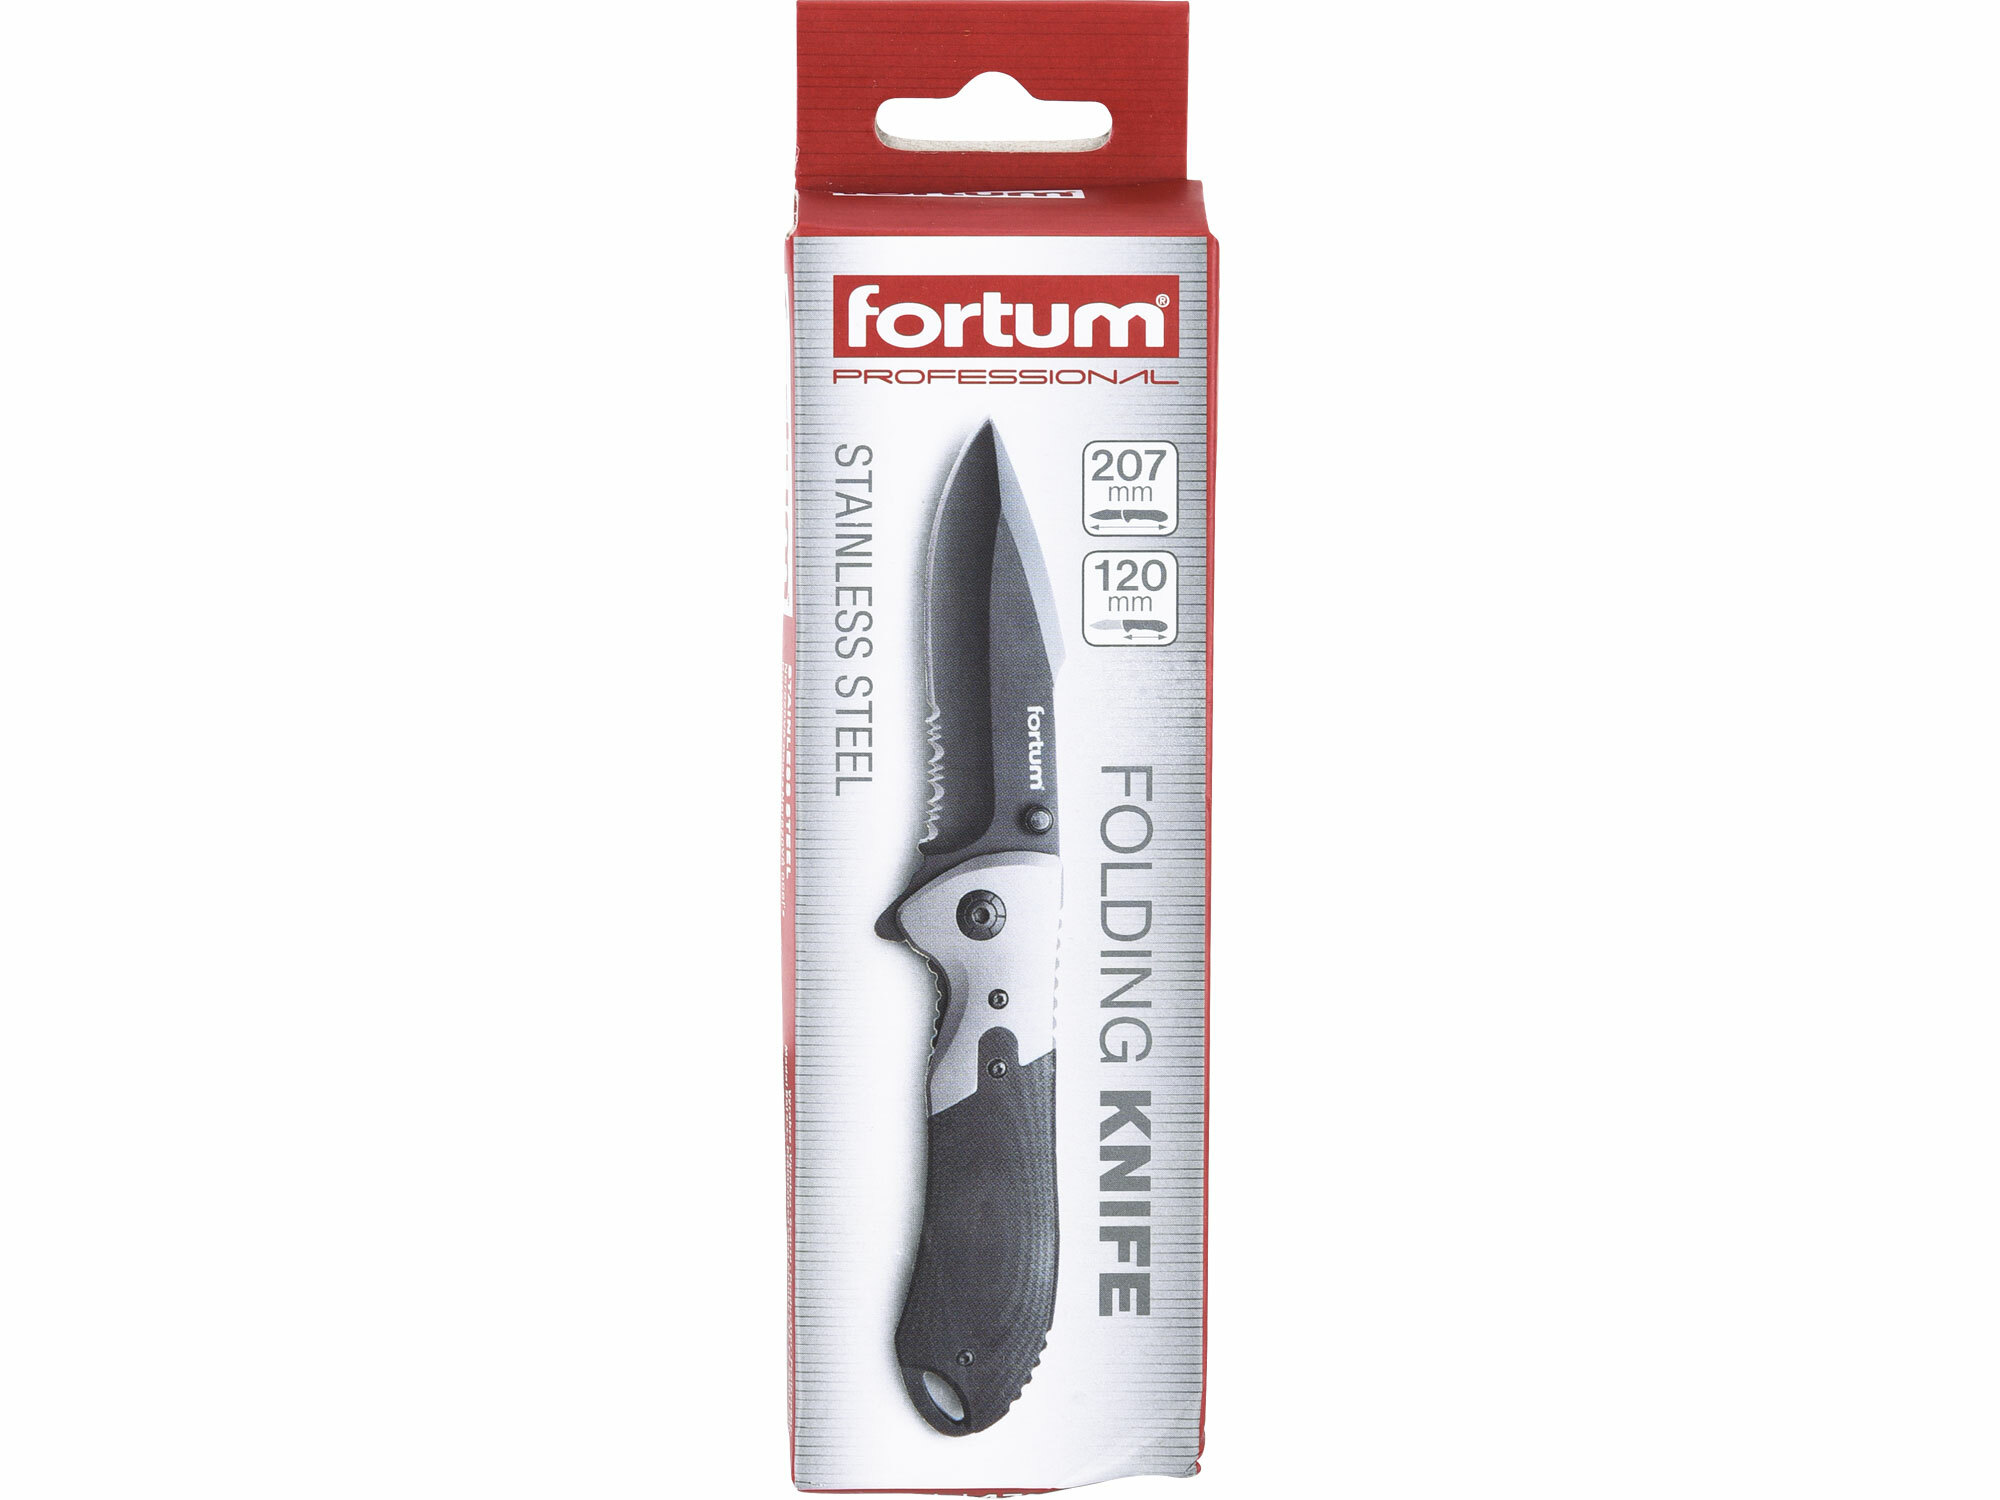 Nož zatvárací s poistkou 207mm, klip na opasok, FORTUM